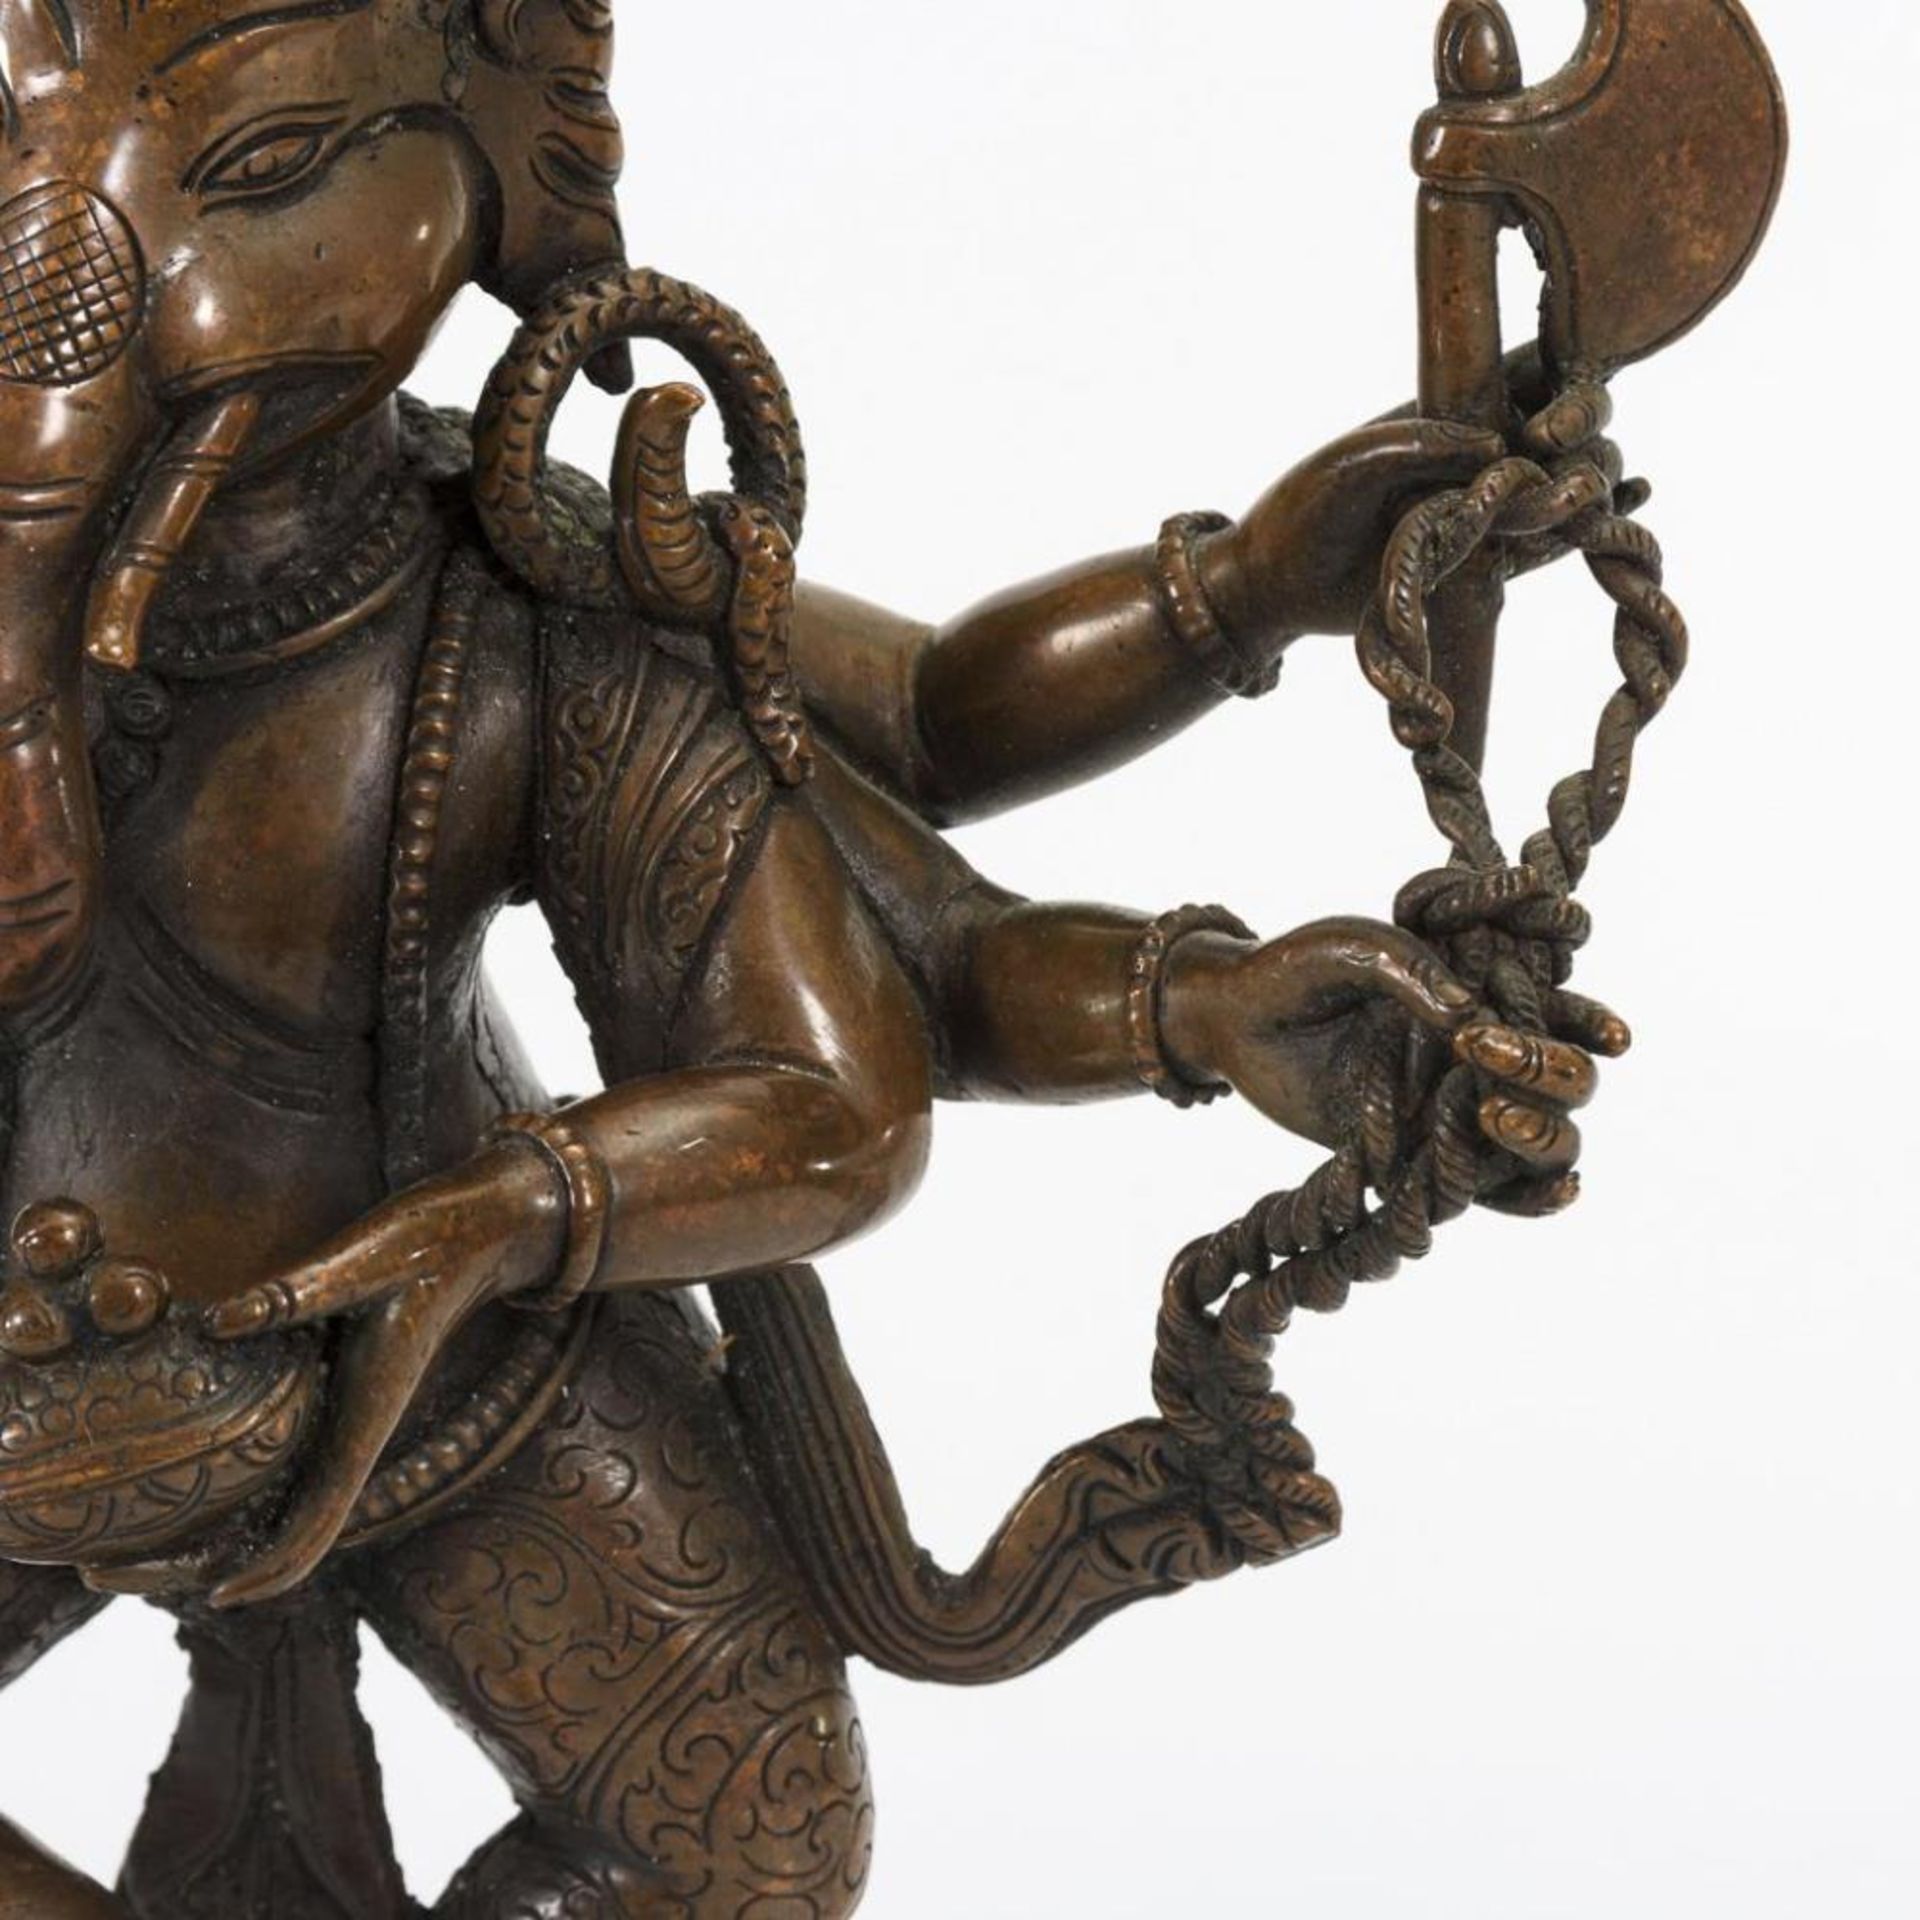 Ganesha auf der Ratte stehend - Bild 4 aus 7